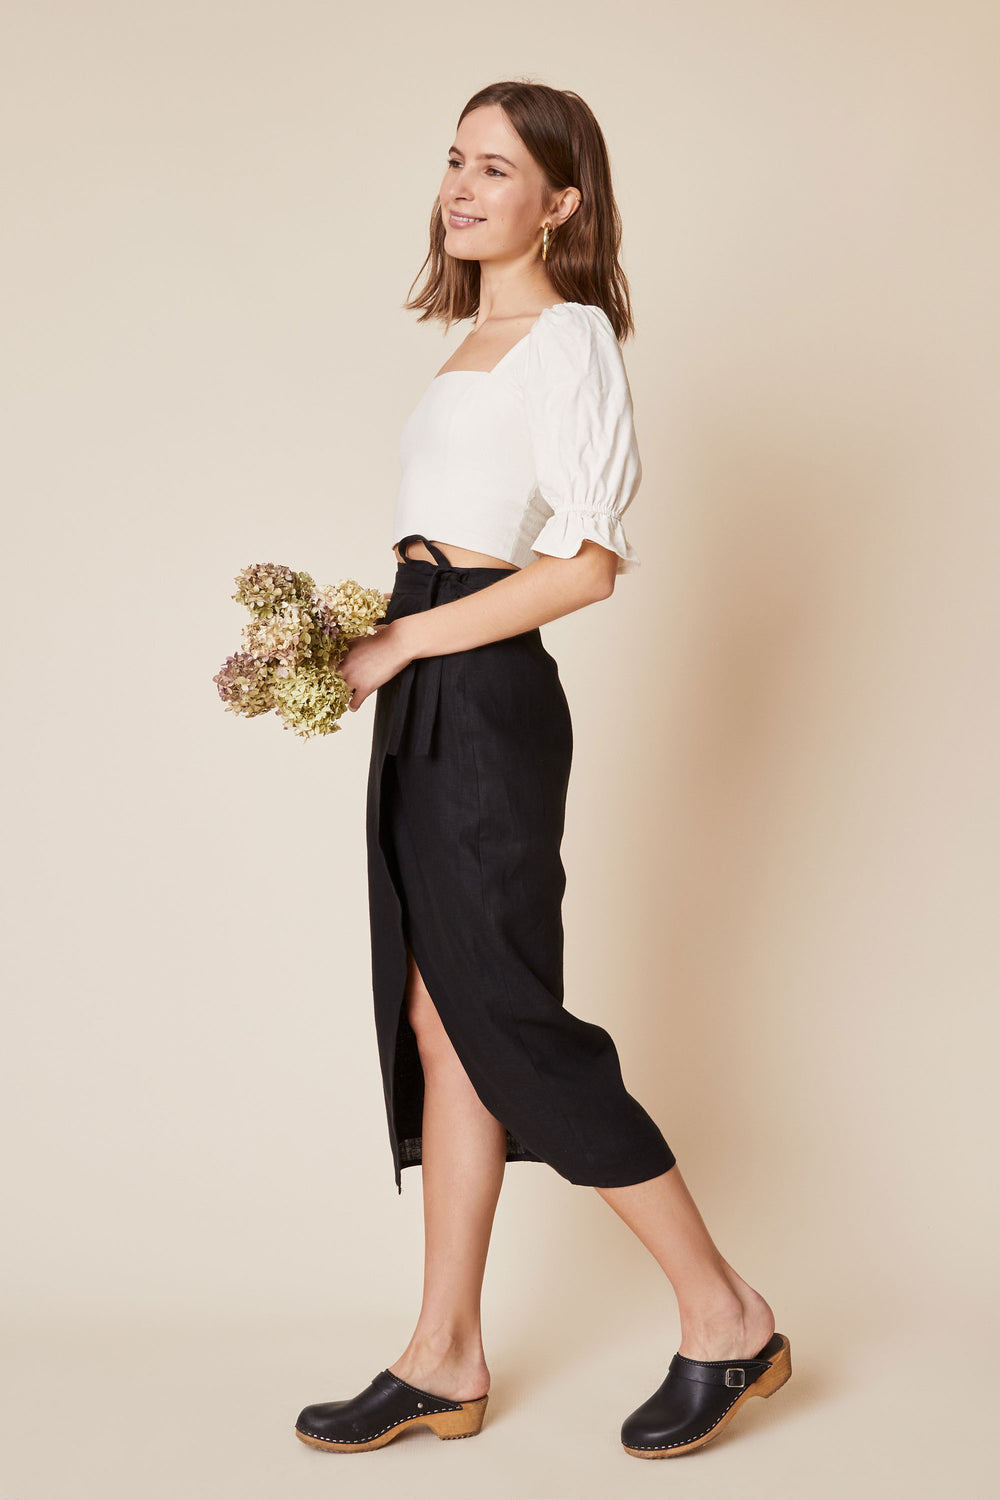 Valentina Skirt in Black Linen - Whimsy & Row